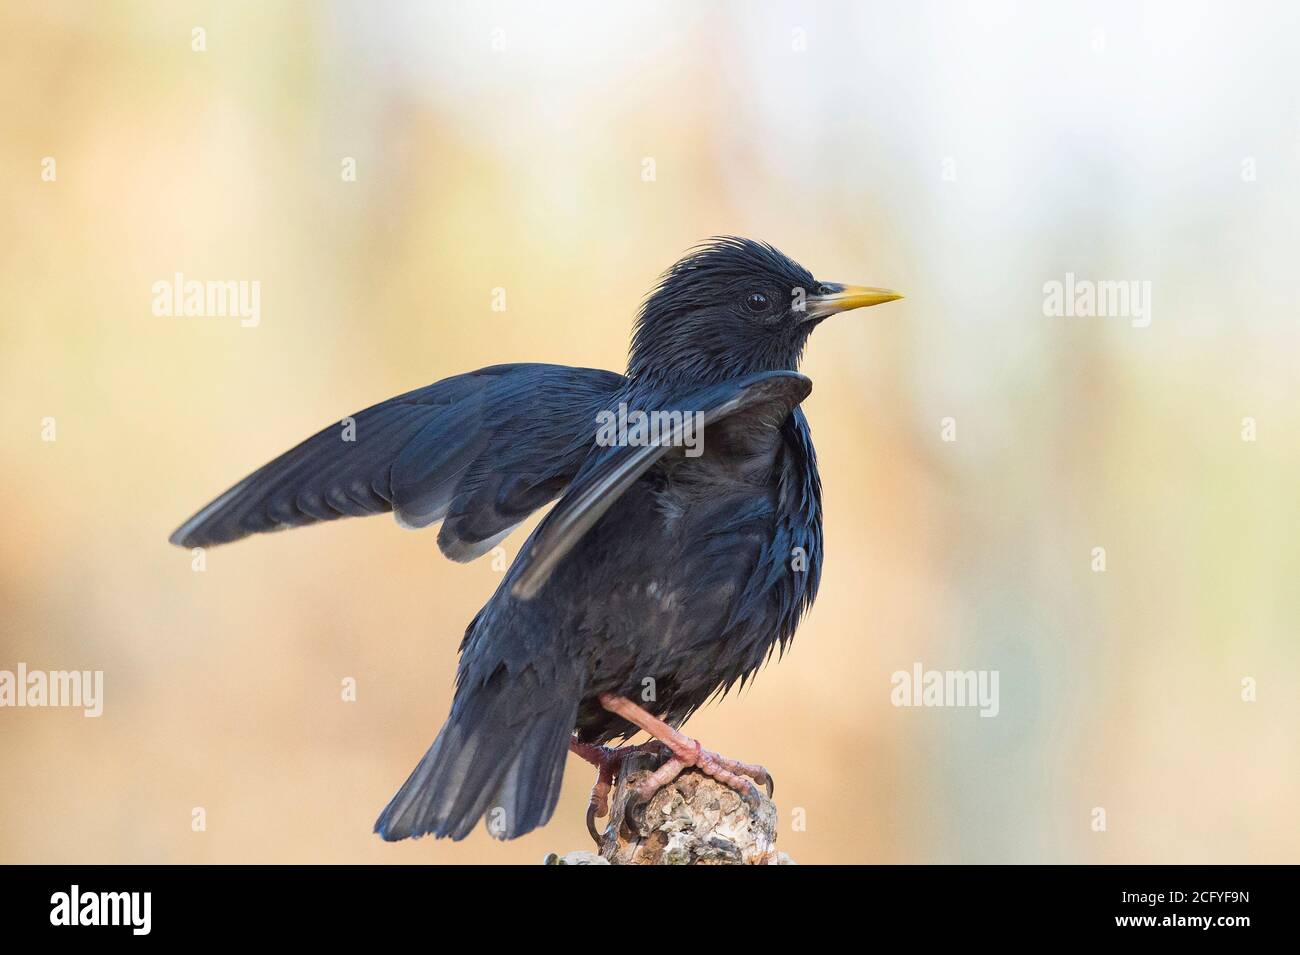 L'étoile immaculée (Sturnus unicolor) est un oiseau de passereau de la famille des Sturnidae, au plumage brillant et noir Banque D'Images